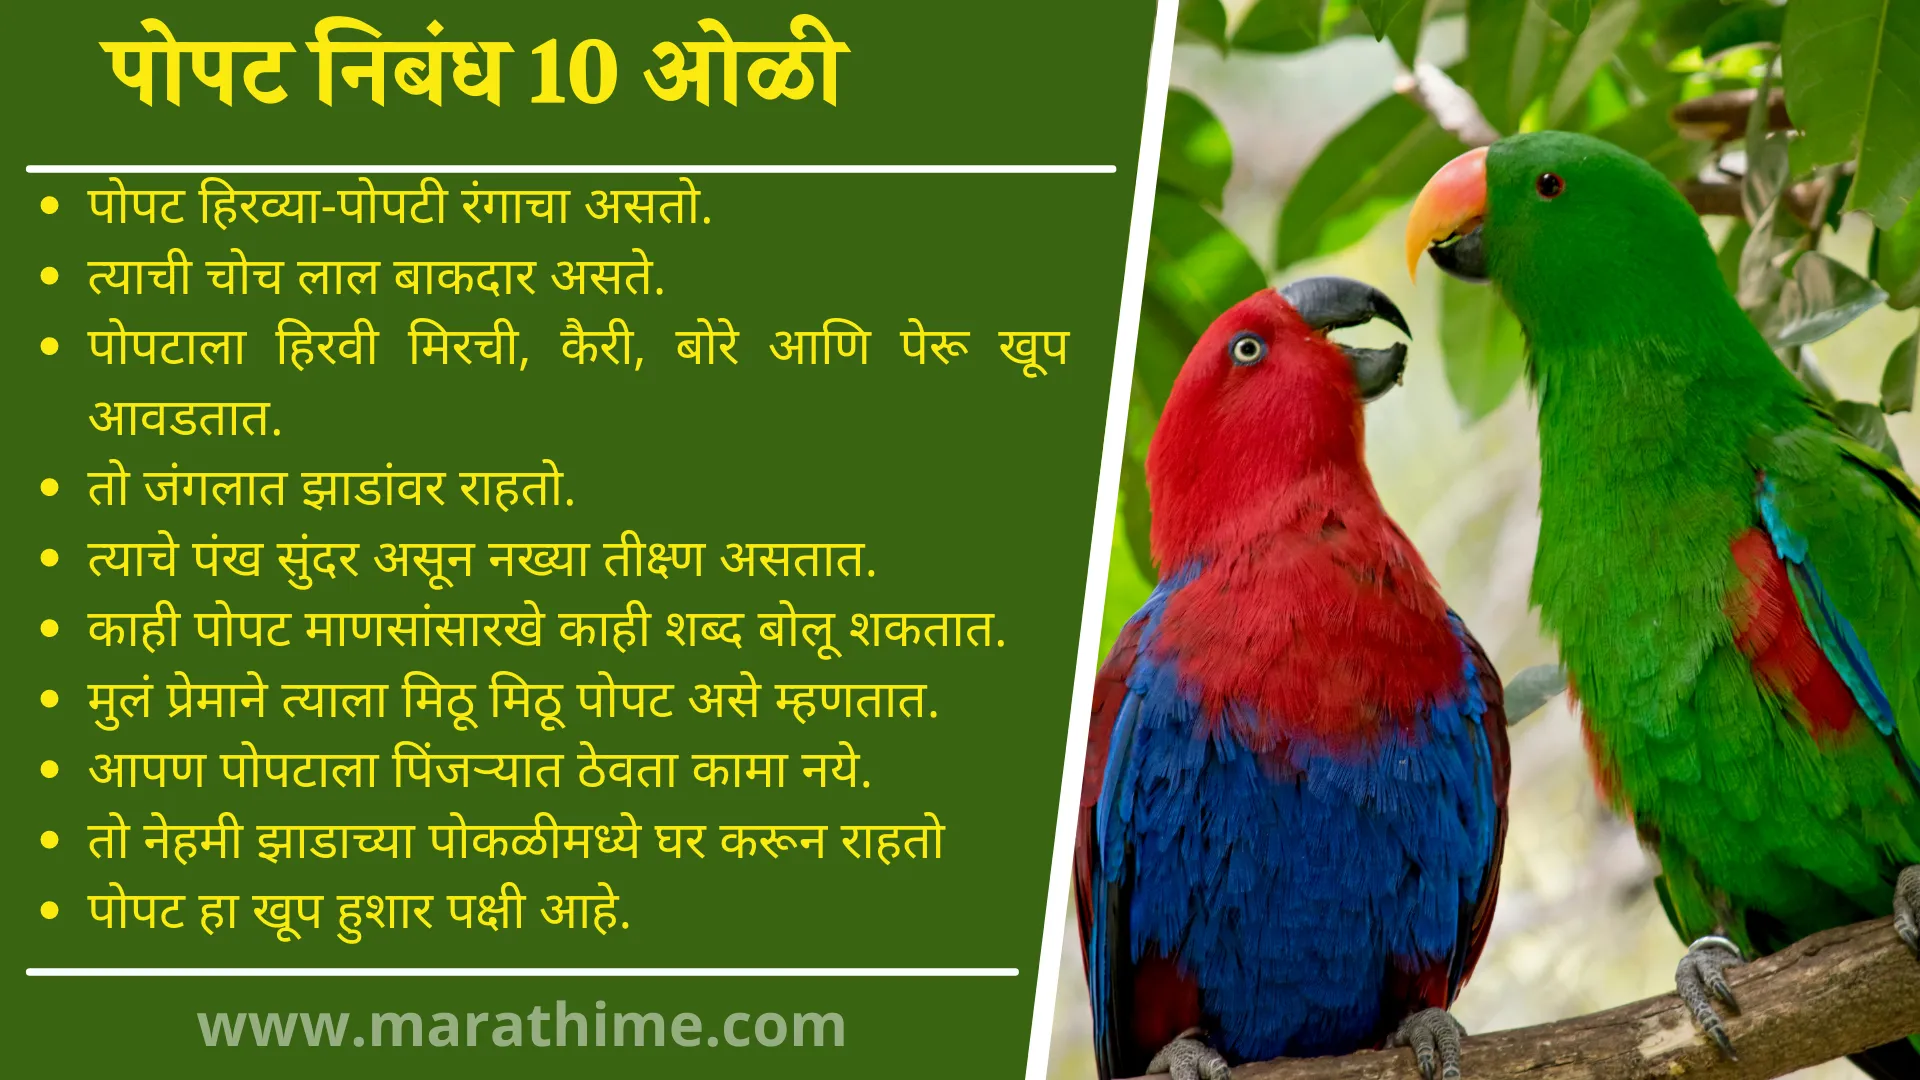 पोपट  निबंध 10 ओळी, 10 Lines on Parrot in Marathi, Essay on Parrot in Marathi